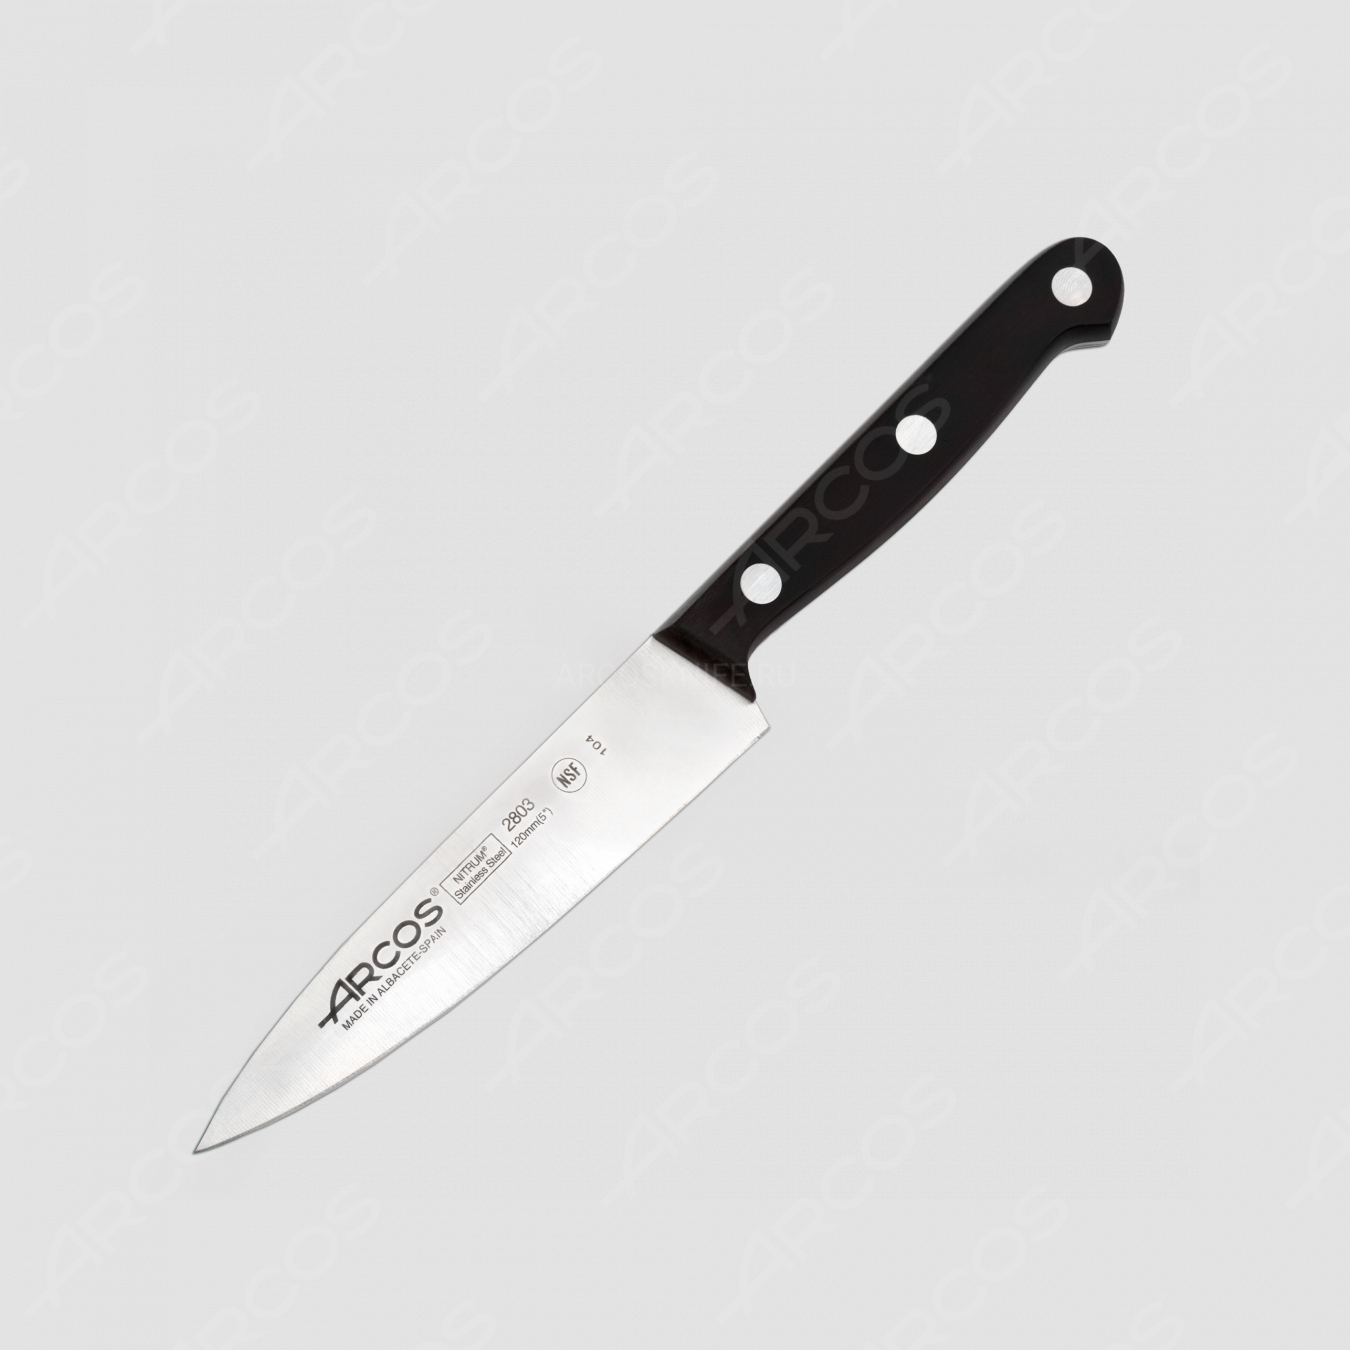 Профессиональный поварской кухонный нож 12 см, серия Universal, ARCOS, Испания